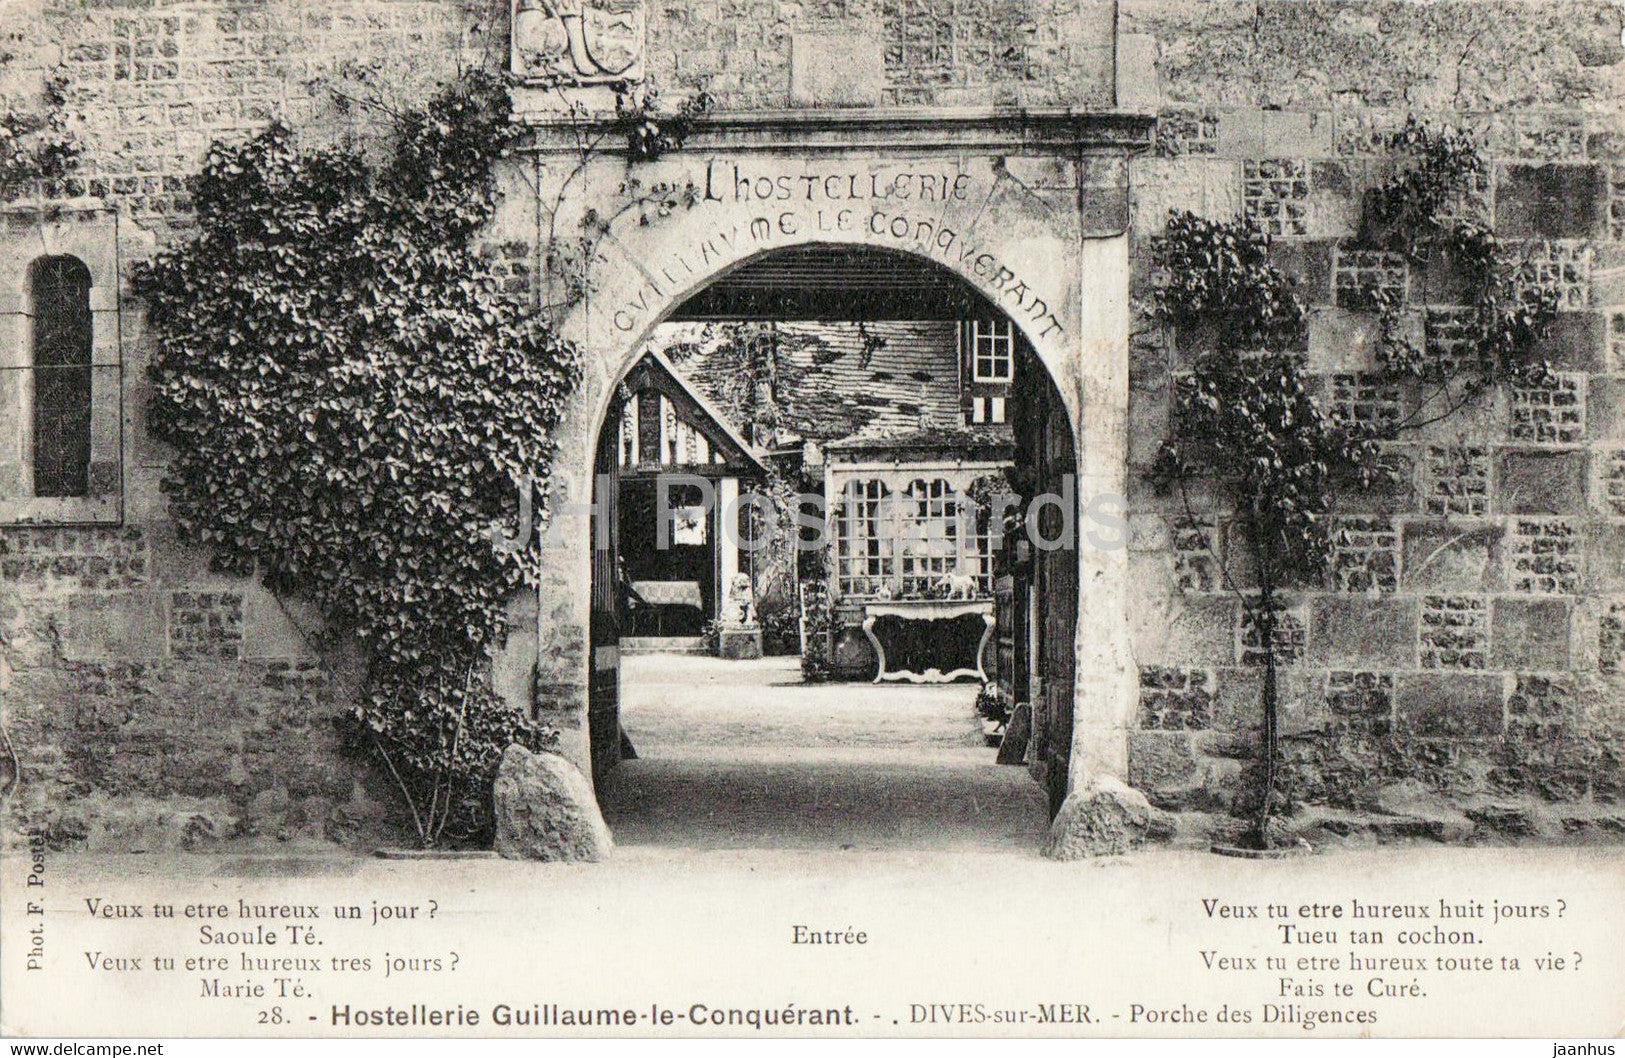 Dives Sur Mer - Hostellerie Guillaume le Conquerant - Porche des Diligences - 28 - old postcard - France - unused - JH Postcards